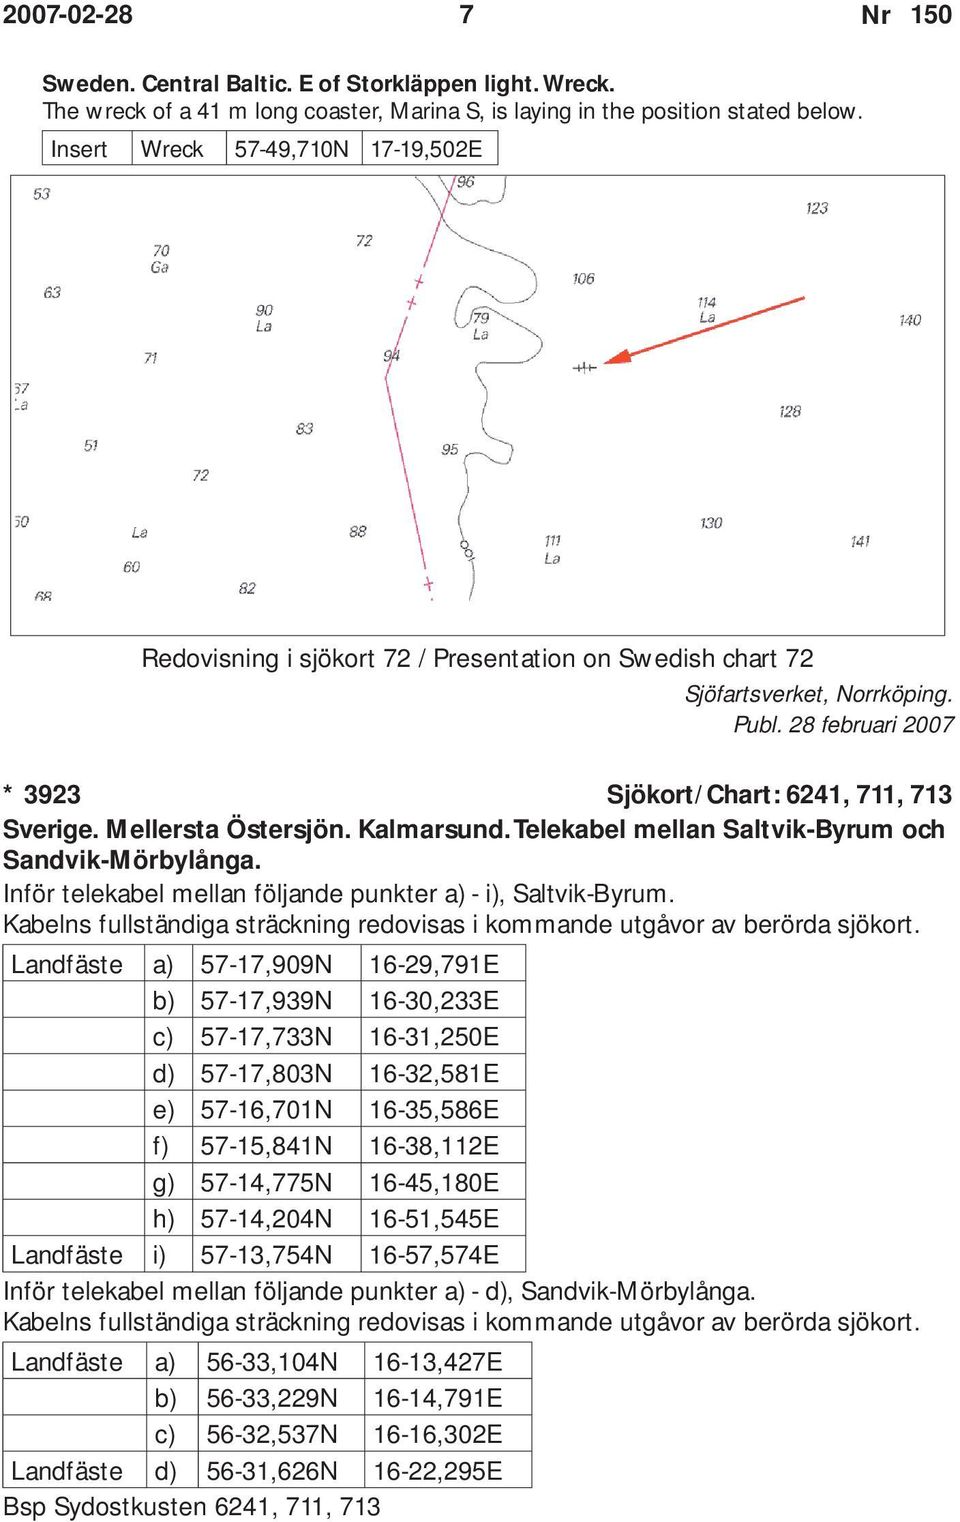 Mellersta Östersjön. Kalmarsund. Telekabel mellan Saltvik-Byrum och Sandvik-Mörbylånga. Inför telekabel mellan följande punkter a) - i), Saltvik-Byrum.